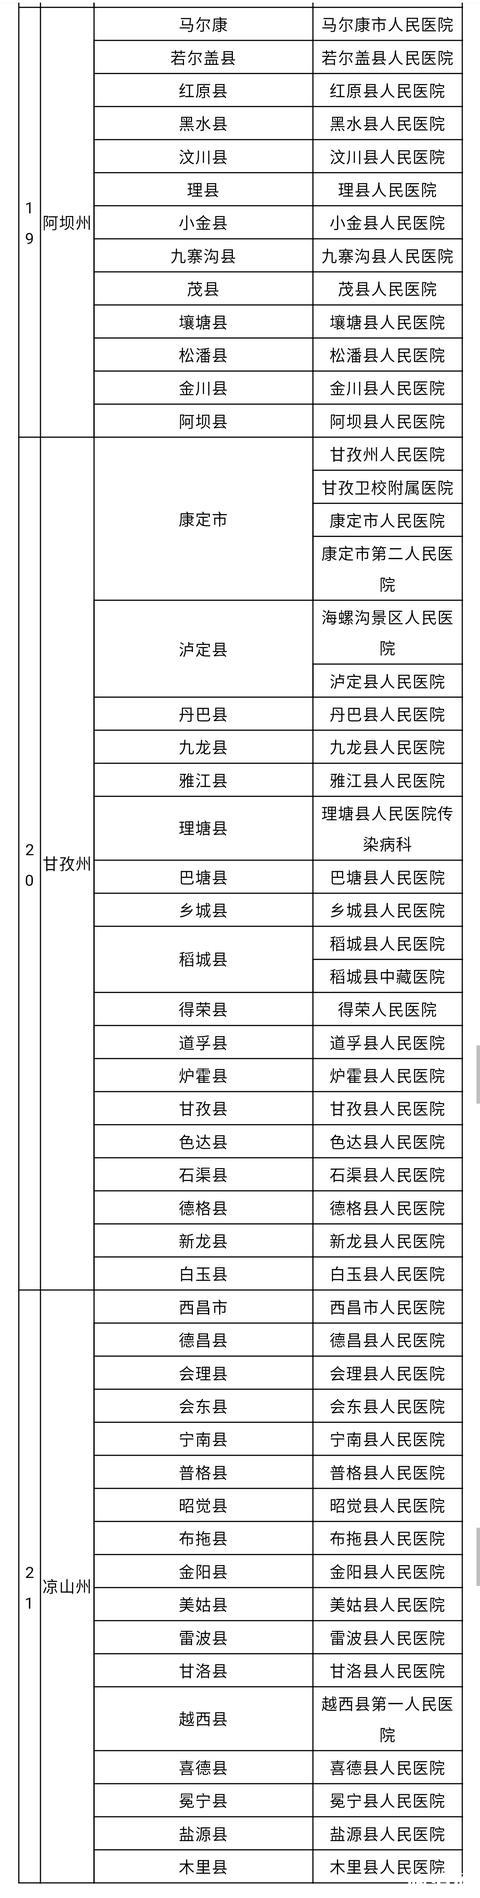 四川疫情救治定点医院名单一览表